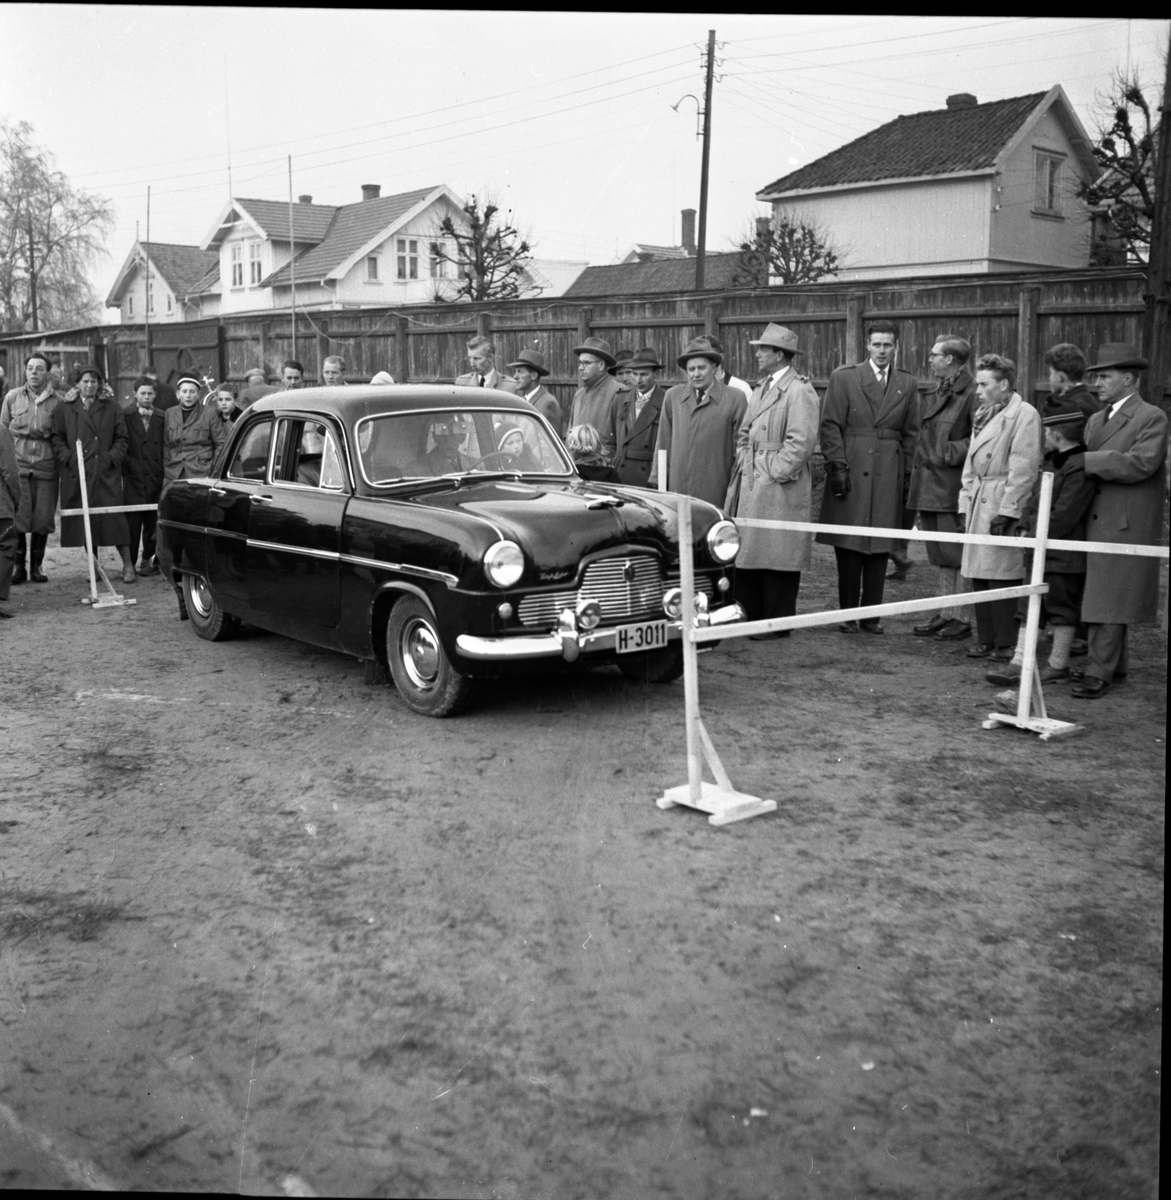 Fotografiene ble tatt i forbindelse med kontrollert promillekjøring "Brandy Spesial" arrangert av Motorførernes avholdsforening (MA) på Odds sportsplass Skien arrangert 4.11.1956.

Bilde 1: H-5995 er en Vauxhall 1951-ca. 1955, H-3011 på bildene 8-10 er en engelsk Ford Zephyr Six 1954-56.

Vardens pressefotosamling